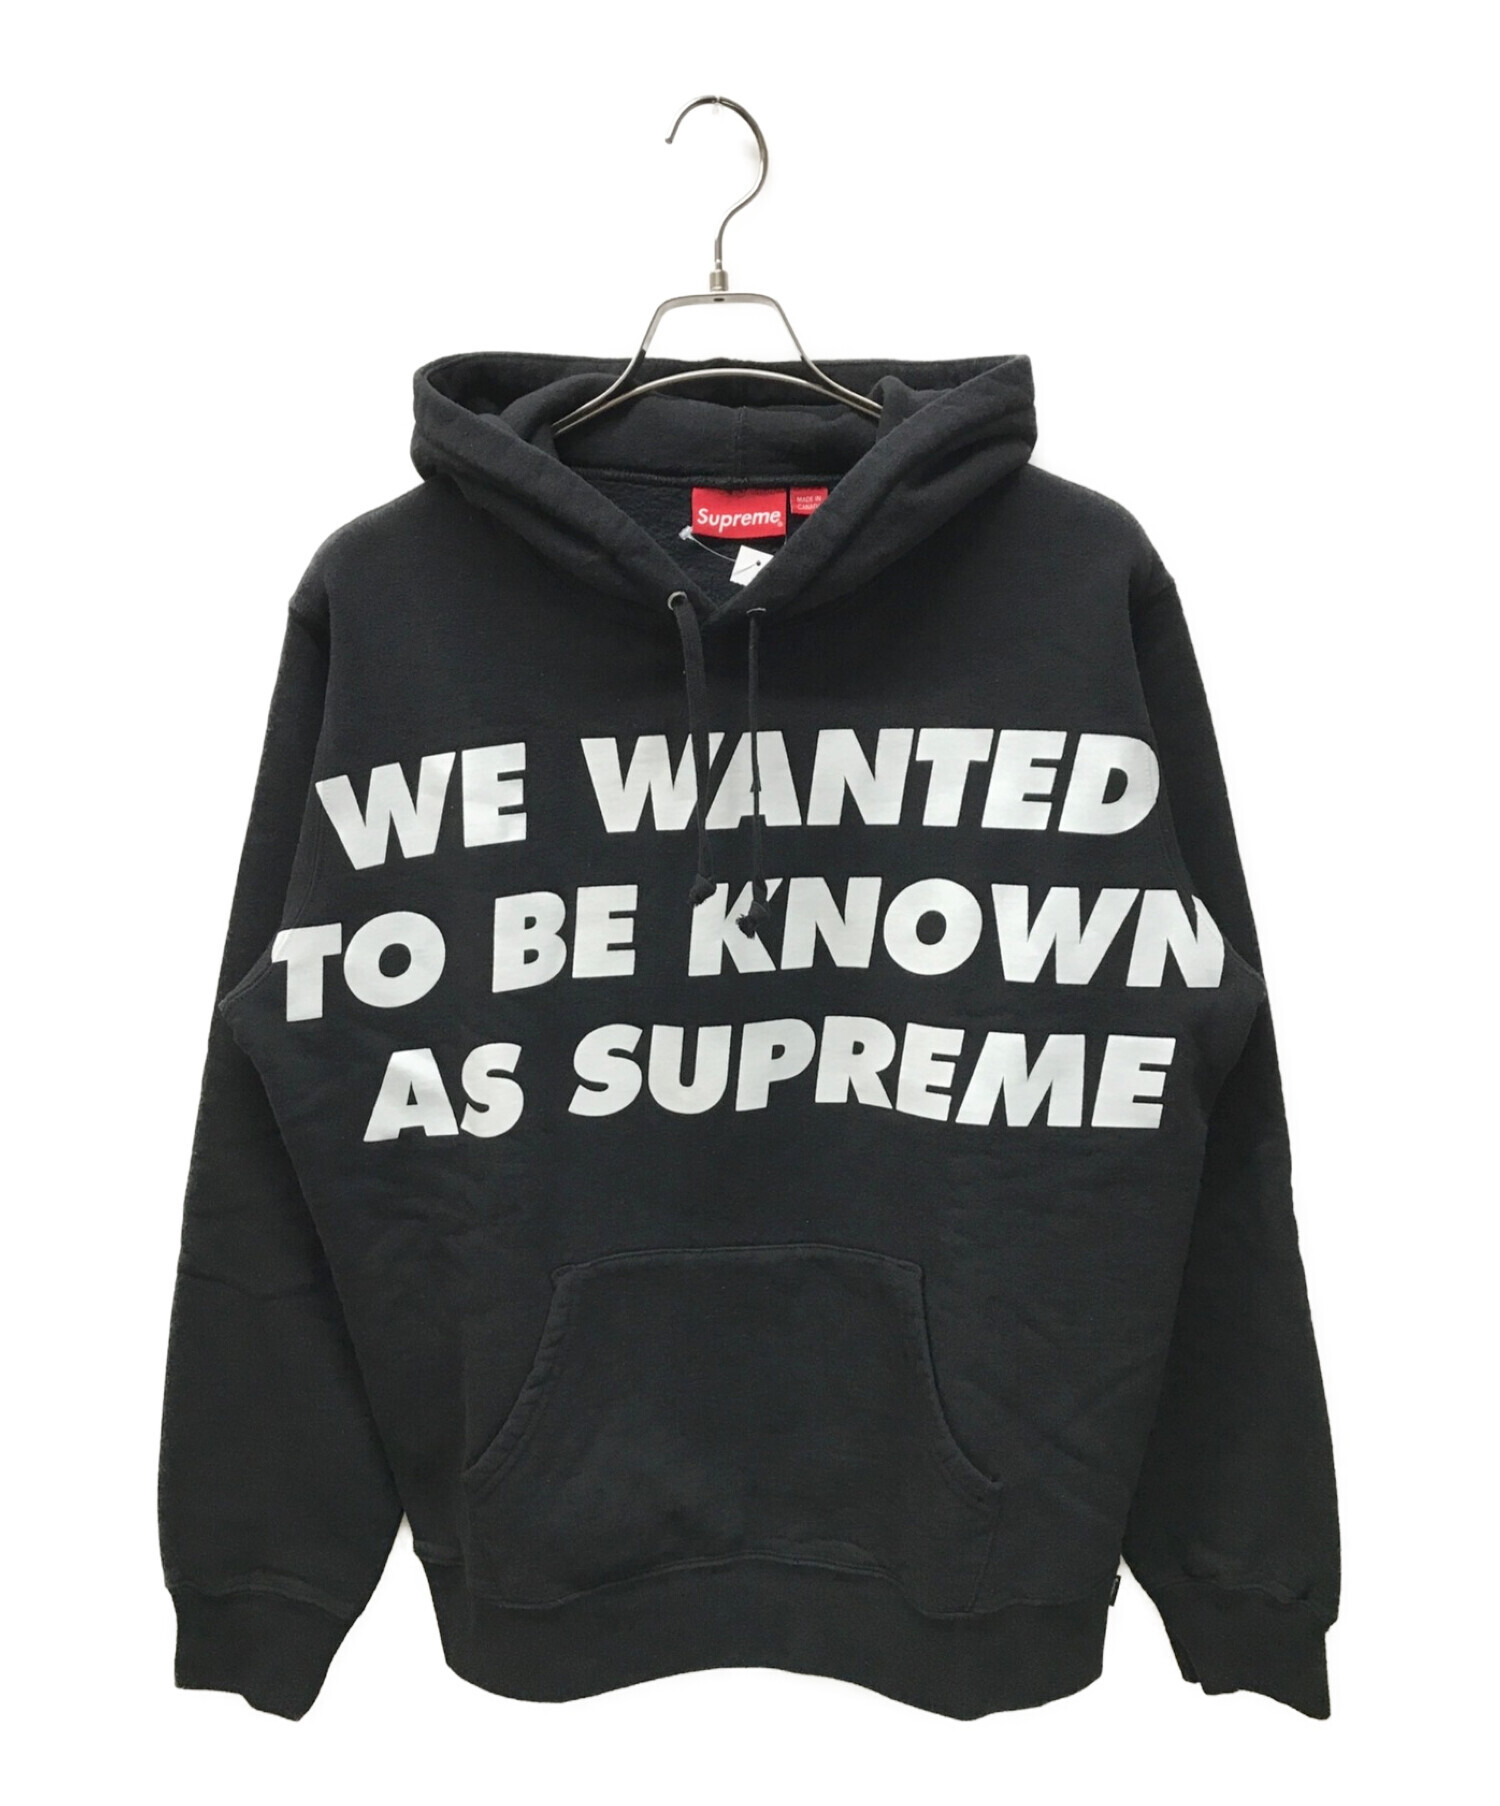 SUPREME (シュプリーム) Known As Hooded Sweatshirt ブラック サイズ:M